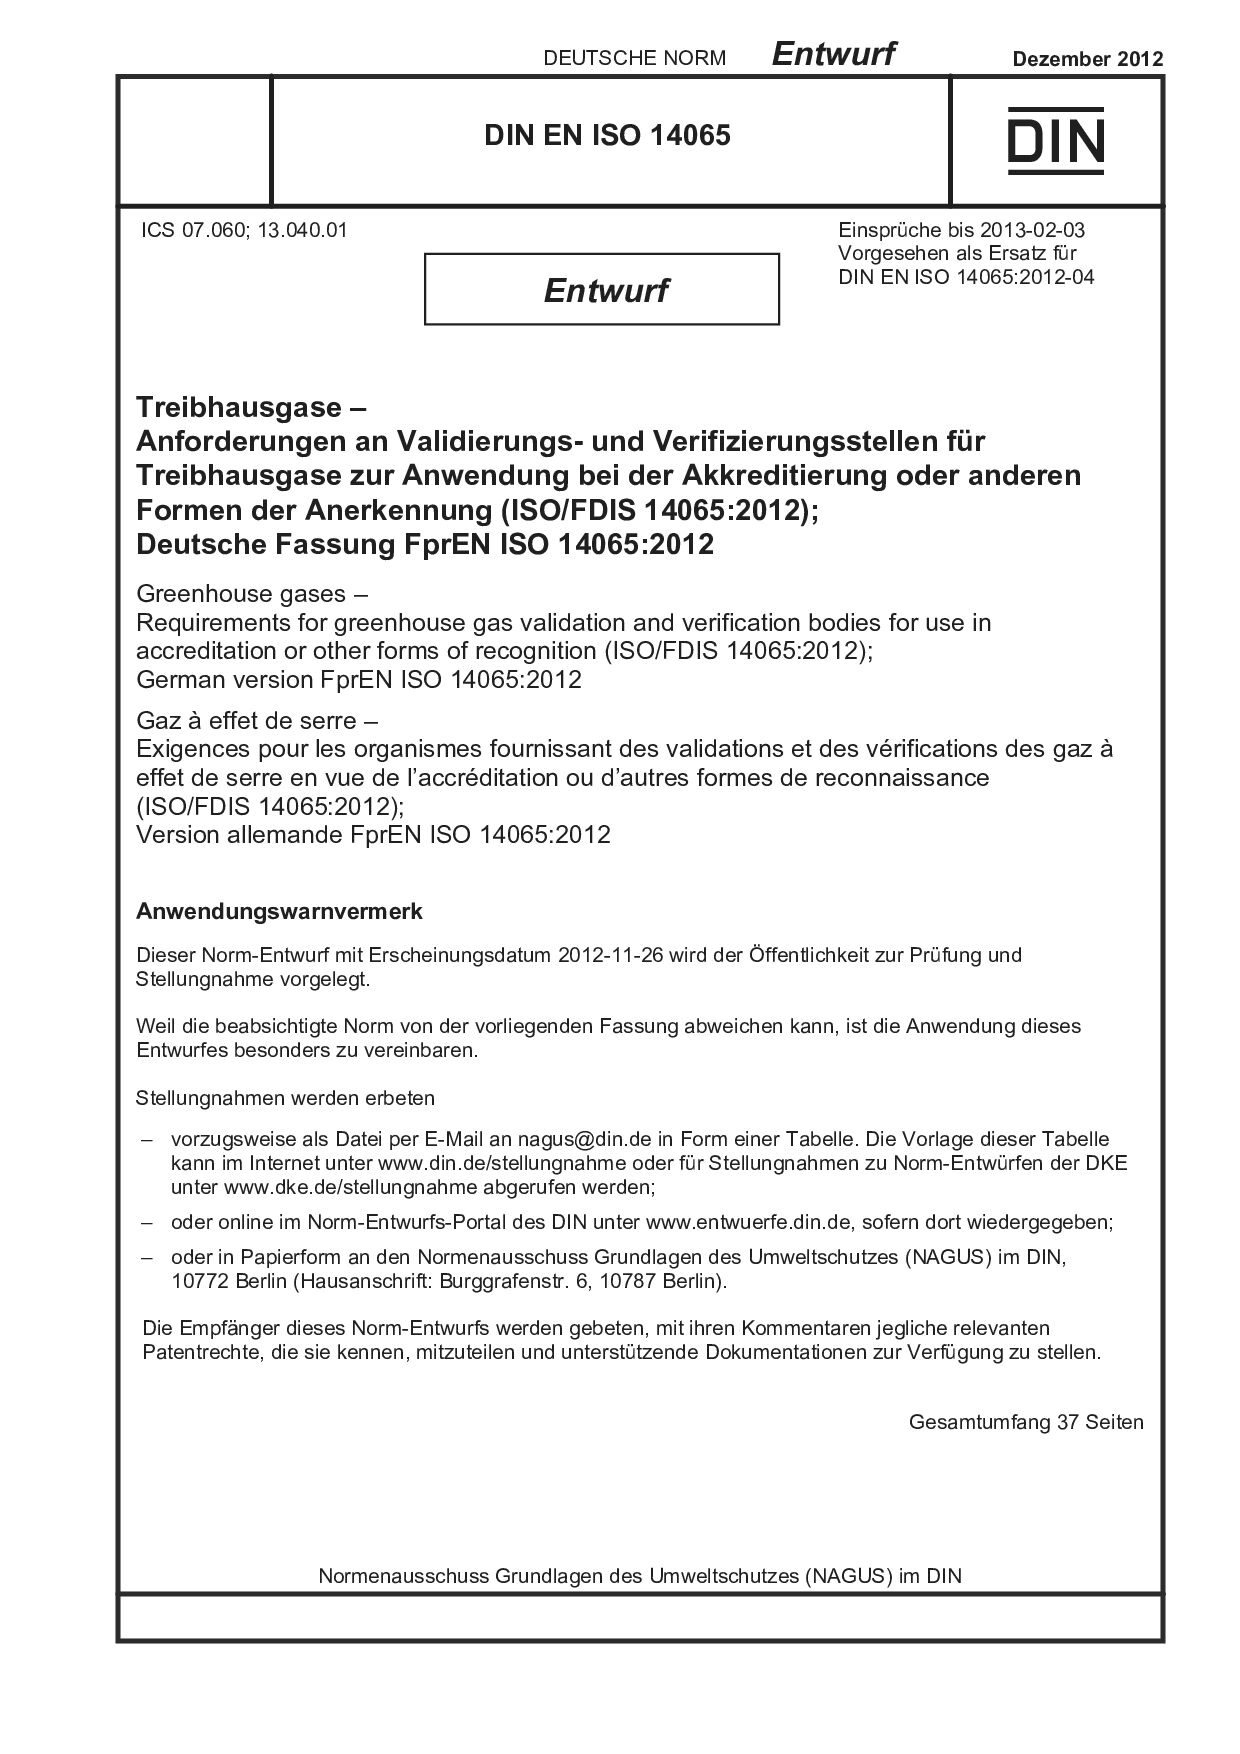 DIN EN ISO 14065 E:2012-12封面图